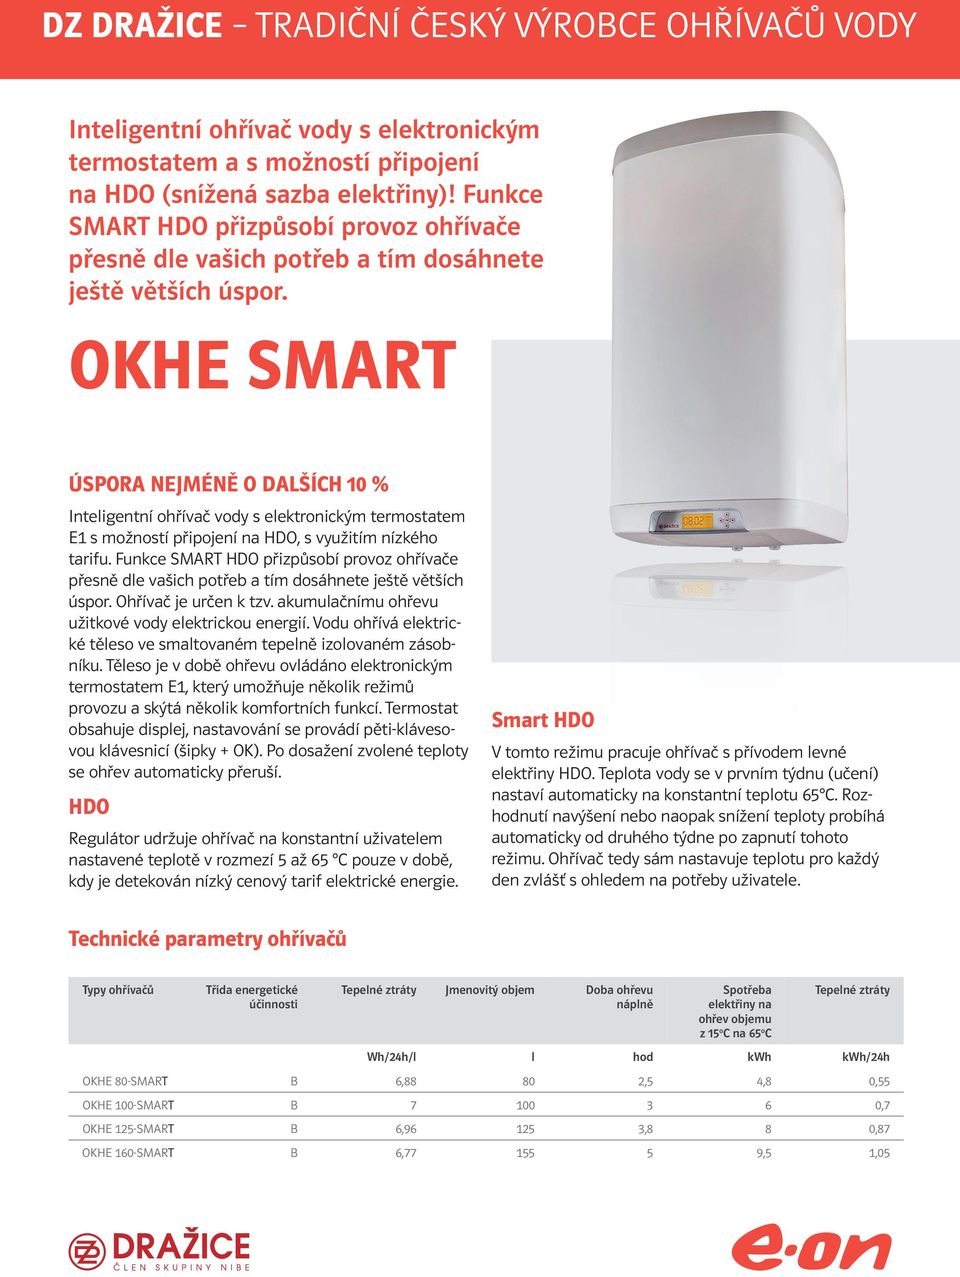 OKHE SMRT ÚSPOR NEJMÉNĚ O DLŠÍH 10 % Inteligentní ohřívač vody s elektronickým termostatem E1 s možností připojení na HDO, s využitím nízkého tarifu.  Ohřívač je určen k tzv.